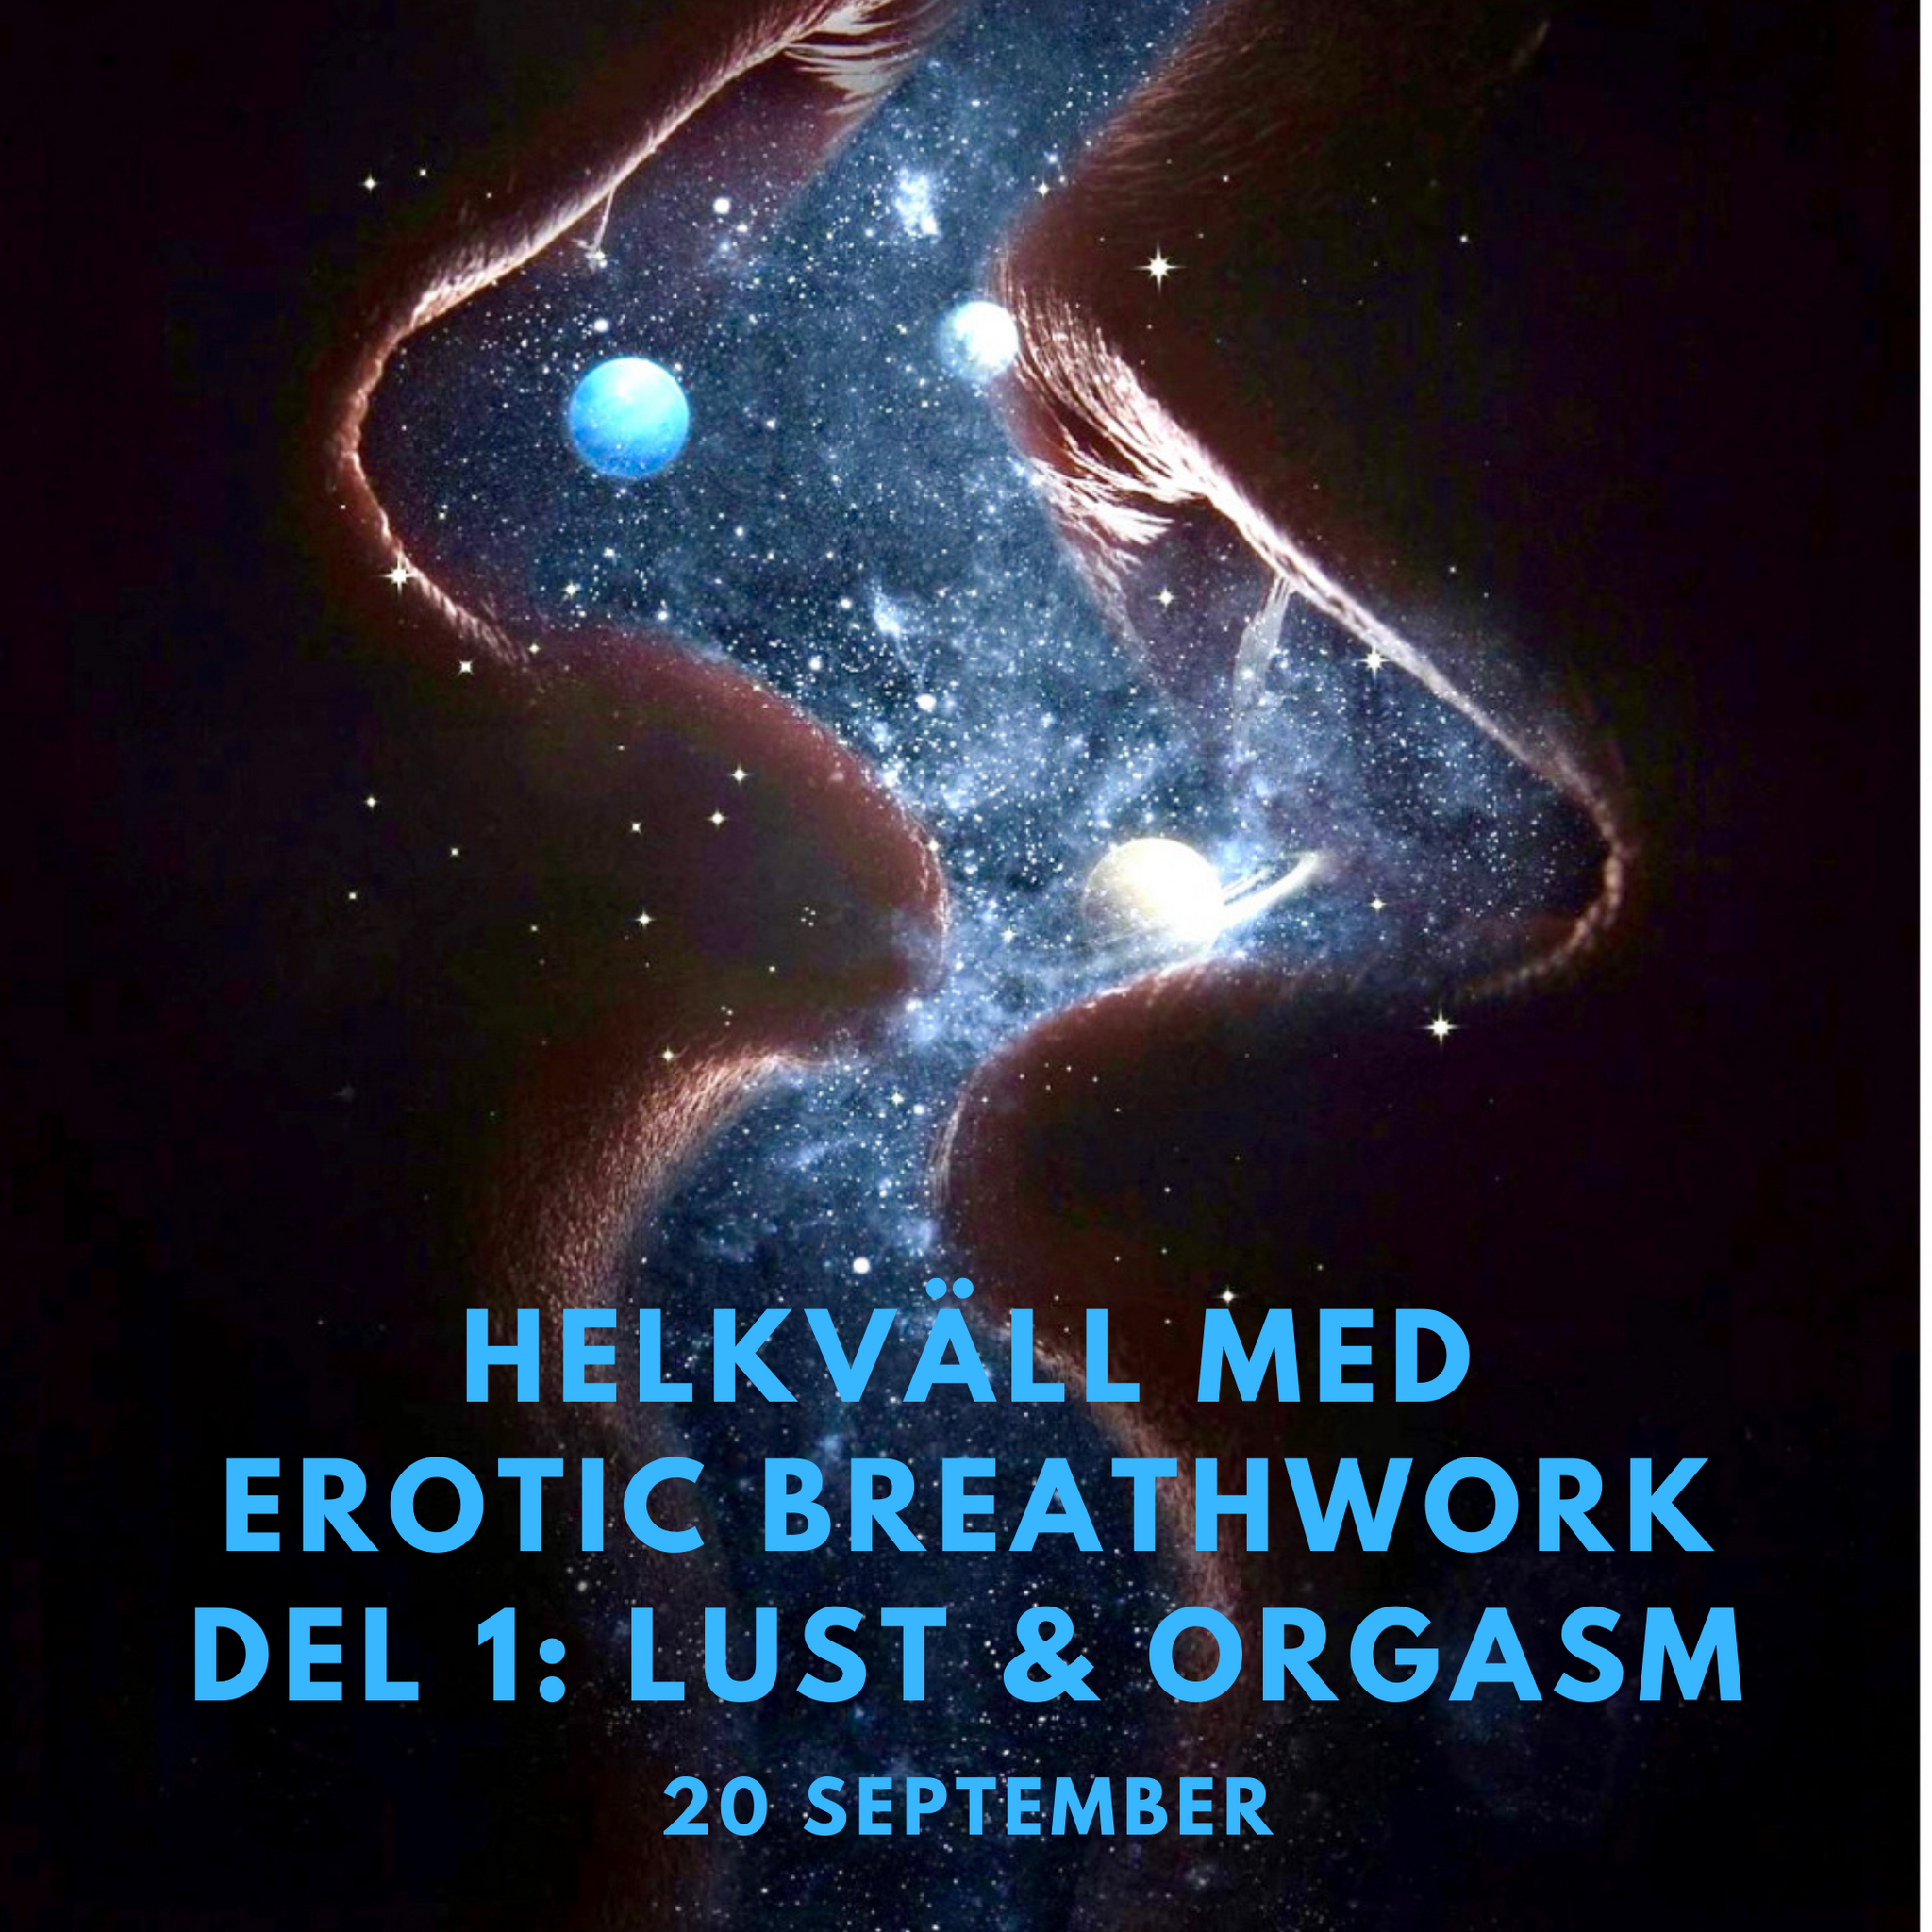 Erotisk breathwork 20/9: Lust, njutning och extas